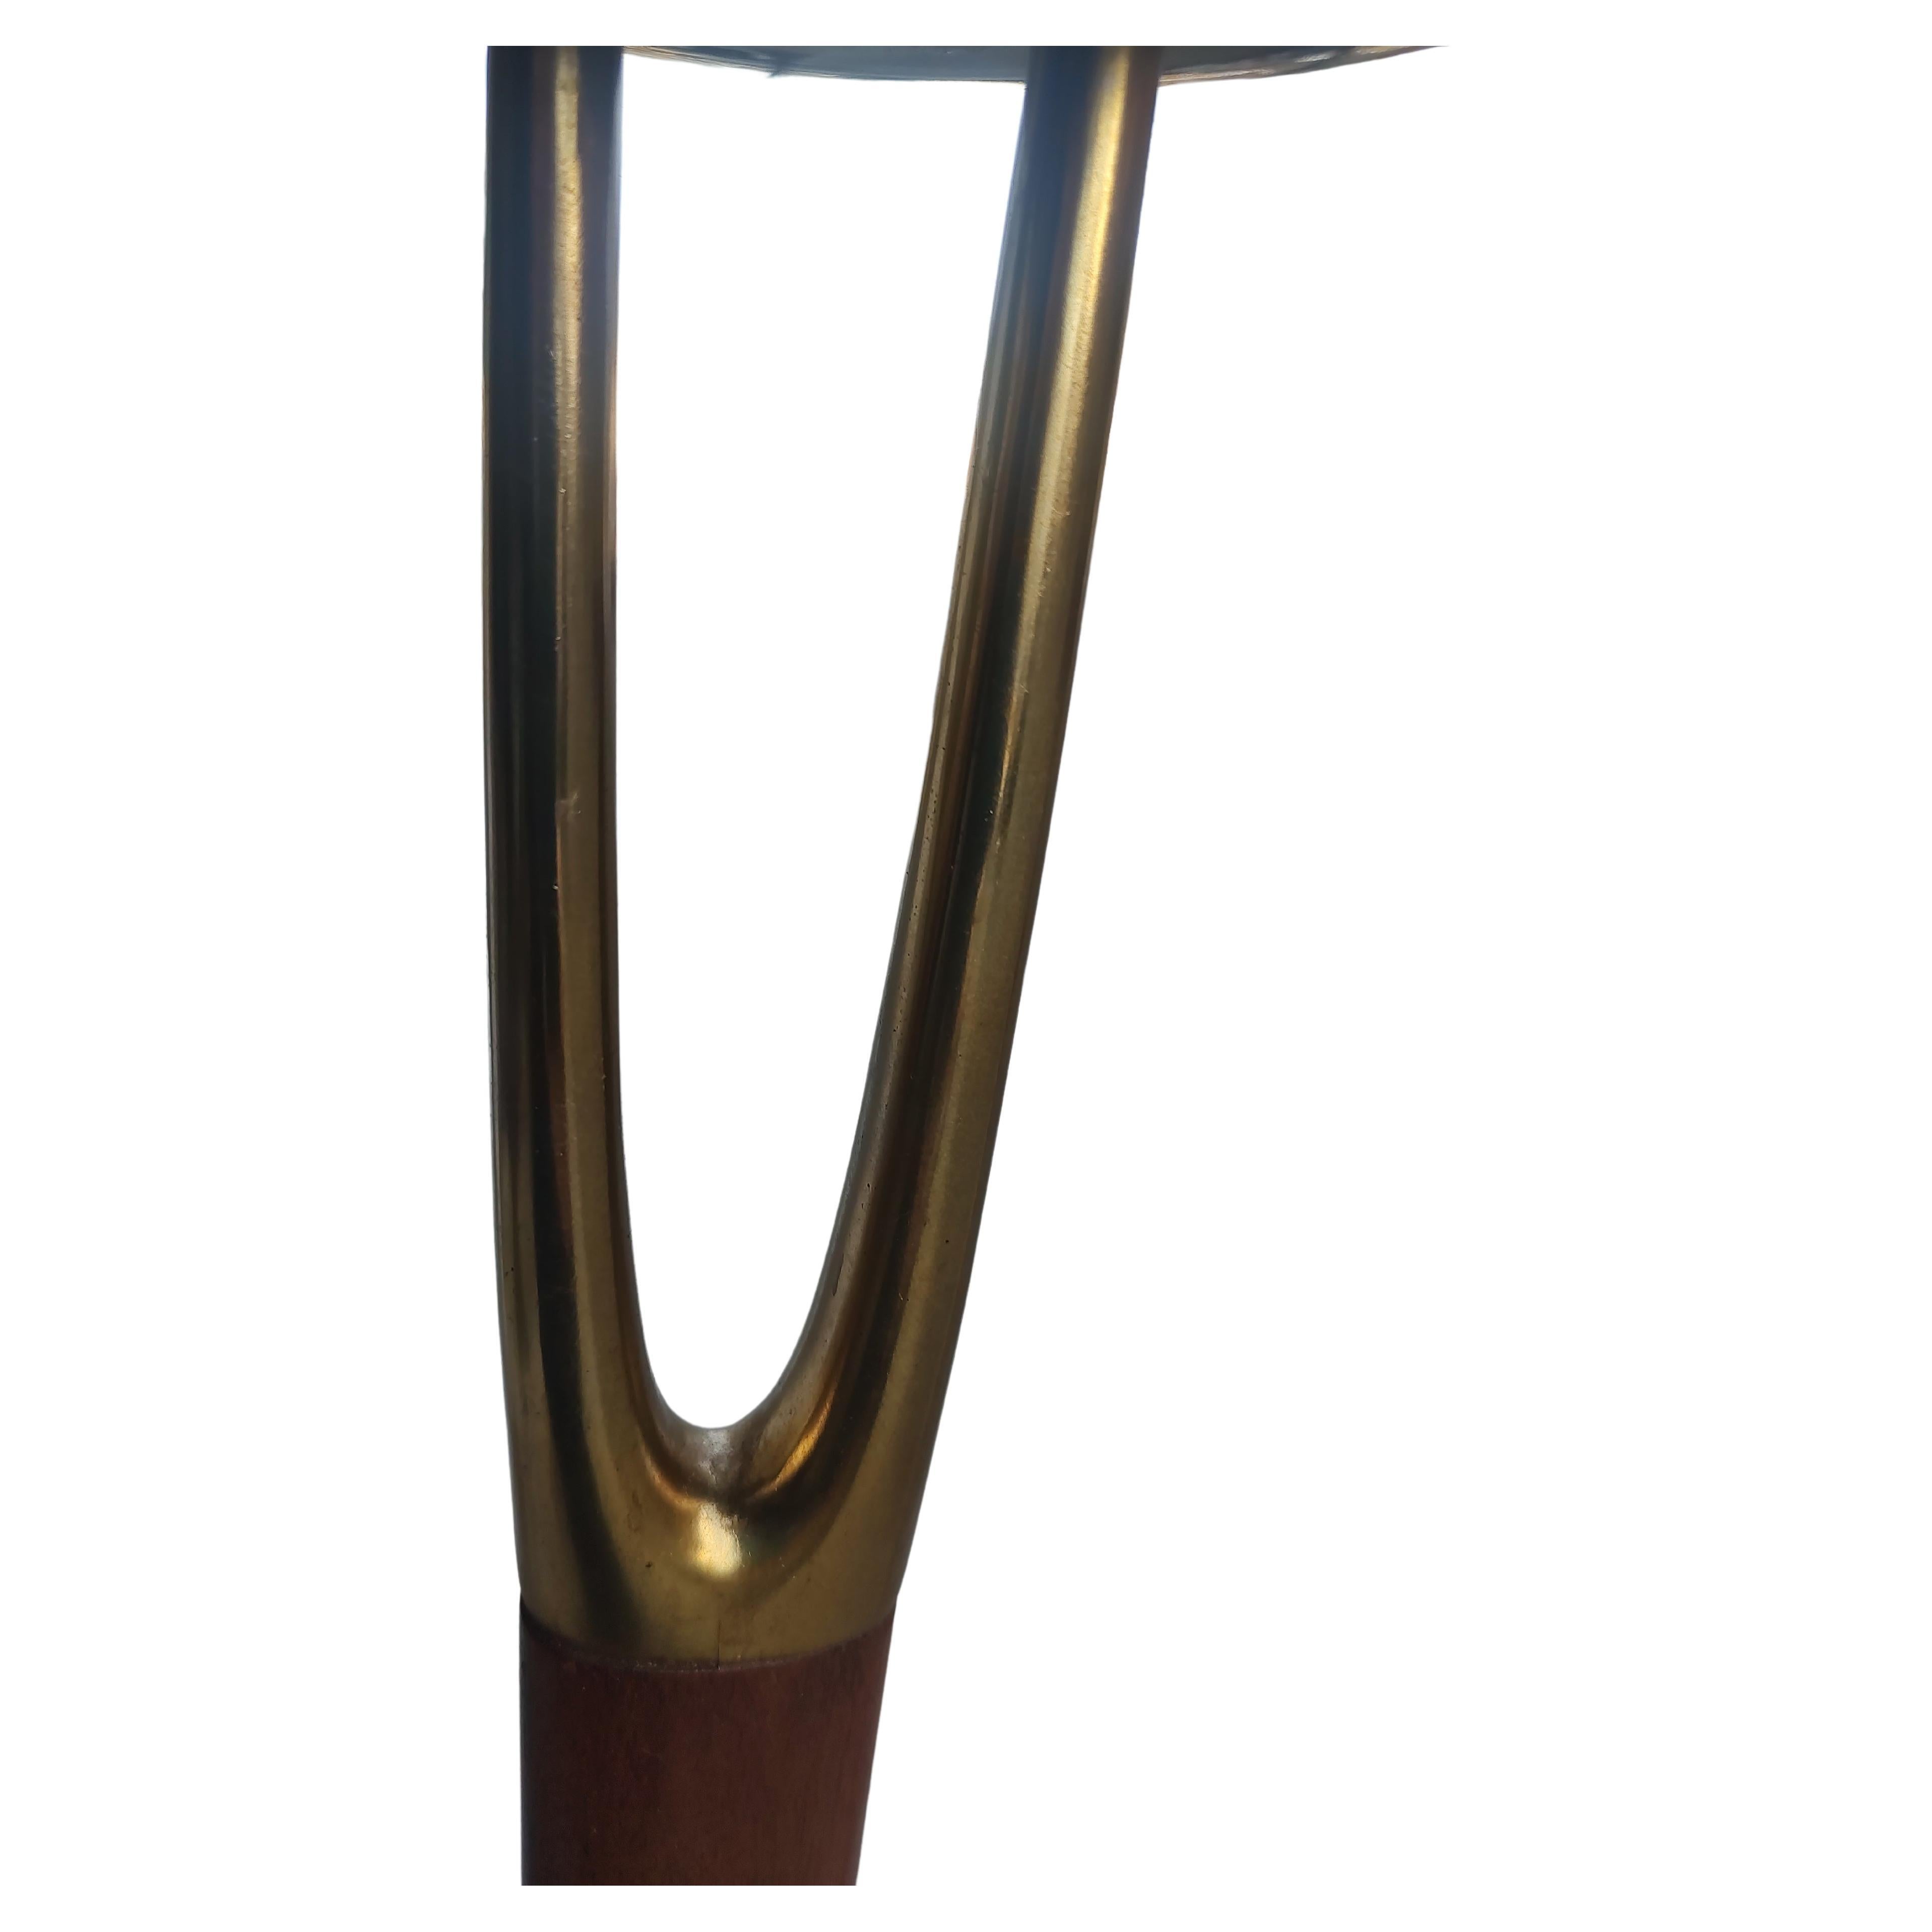 Fabuleuse paire de lampadaires Wishbone par Gerald Thurston pour Laurel Lamp Co. C1960. Magnifique paire de lampadaires avec les abat-jours en verre d'origine totalement intacts. Hauteur 65.75 avec un diamètre de 20 pouces et une base carrée 10 x